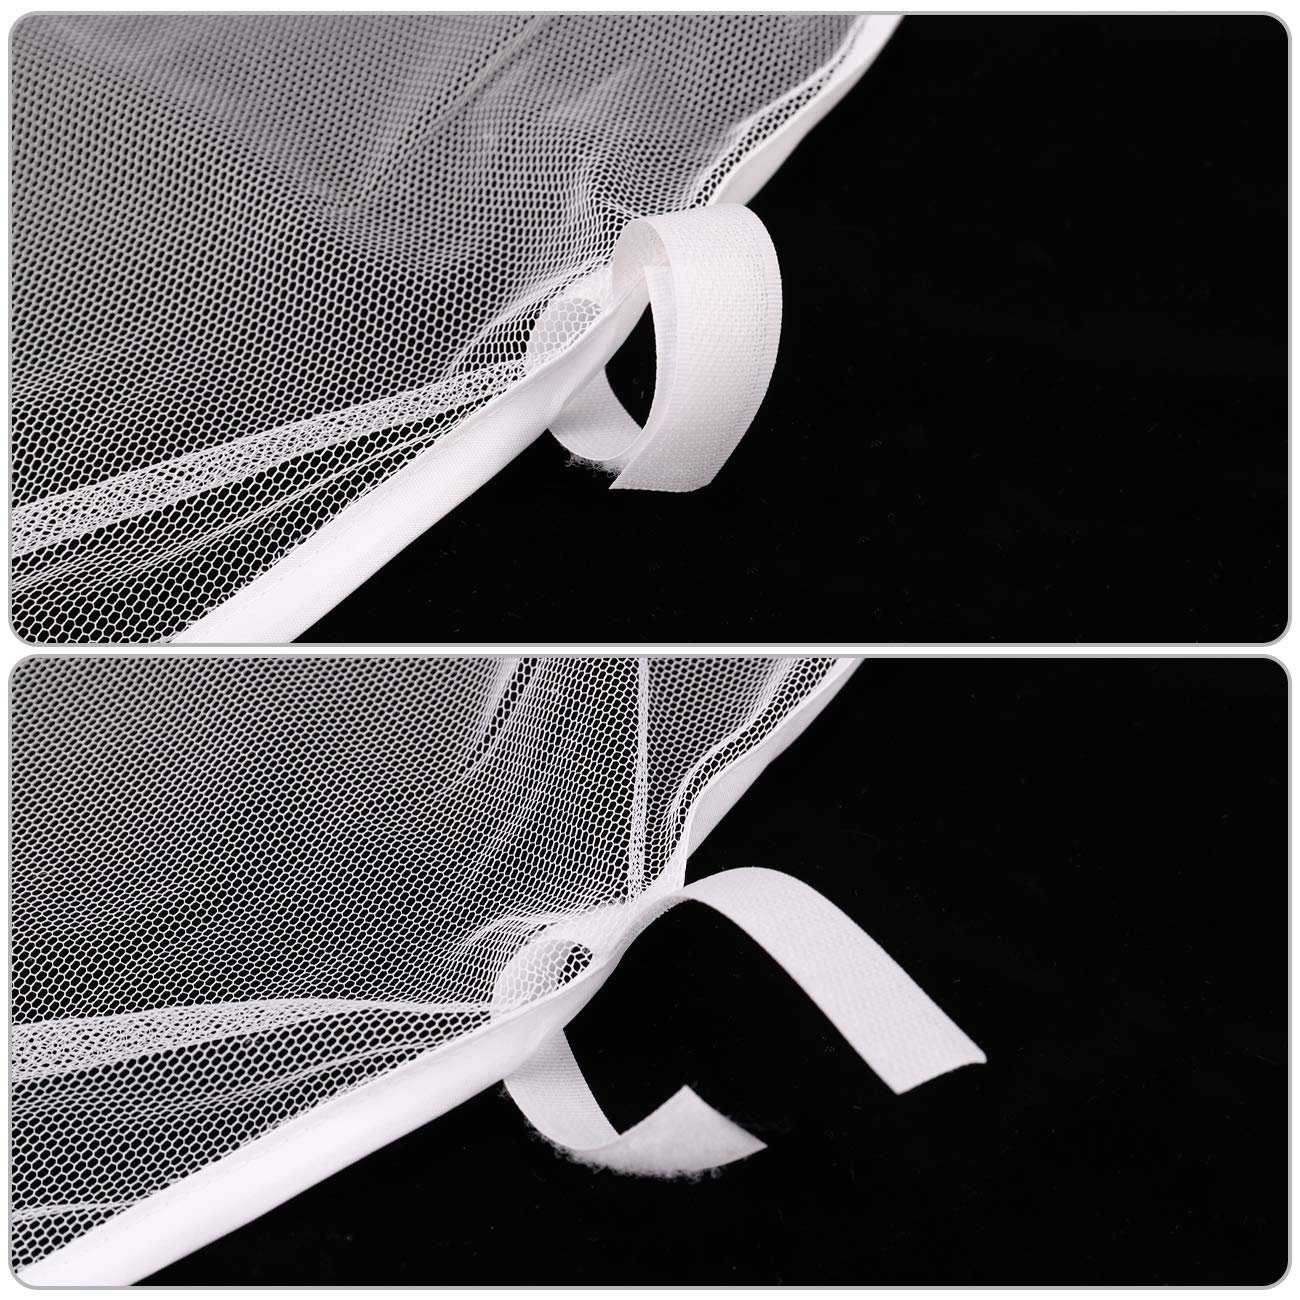 für Moskitonetz Pavillon 3x3m, Fliegengitter Sekey Klettbänder mit und Insektenschutz Weiß Reißverschluss